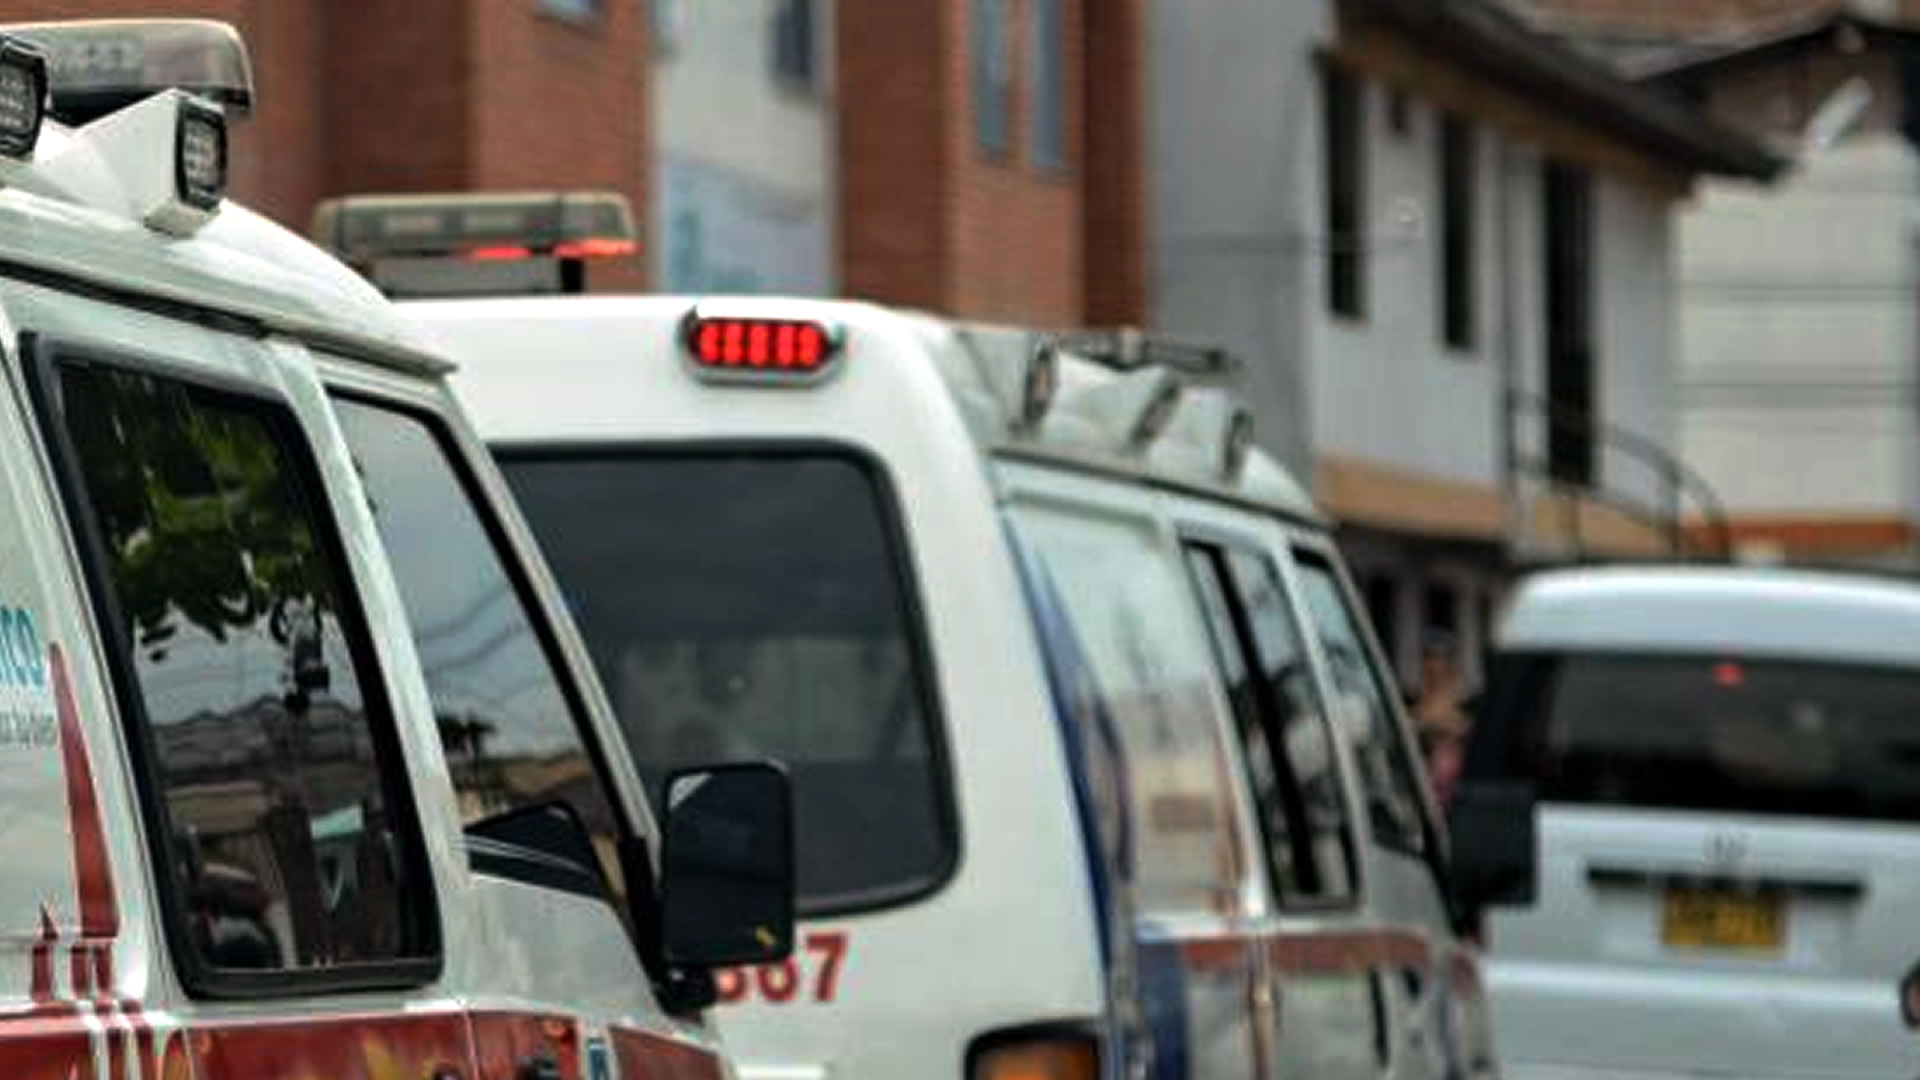 Guerra de ambulancias dejó grave accidente de dos motociclistas al sur de Bogotá. Imagen de referencia.